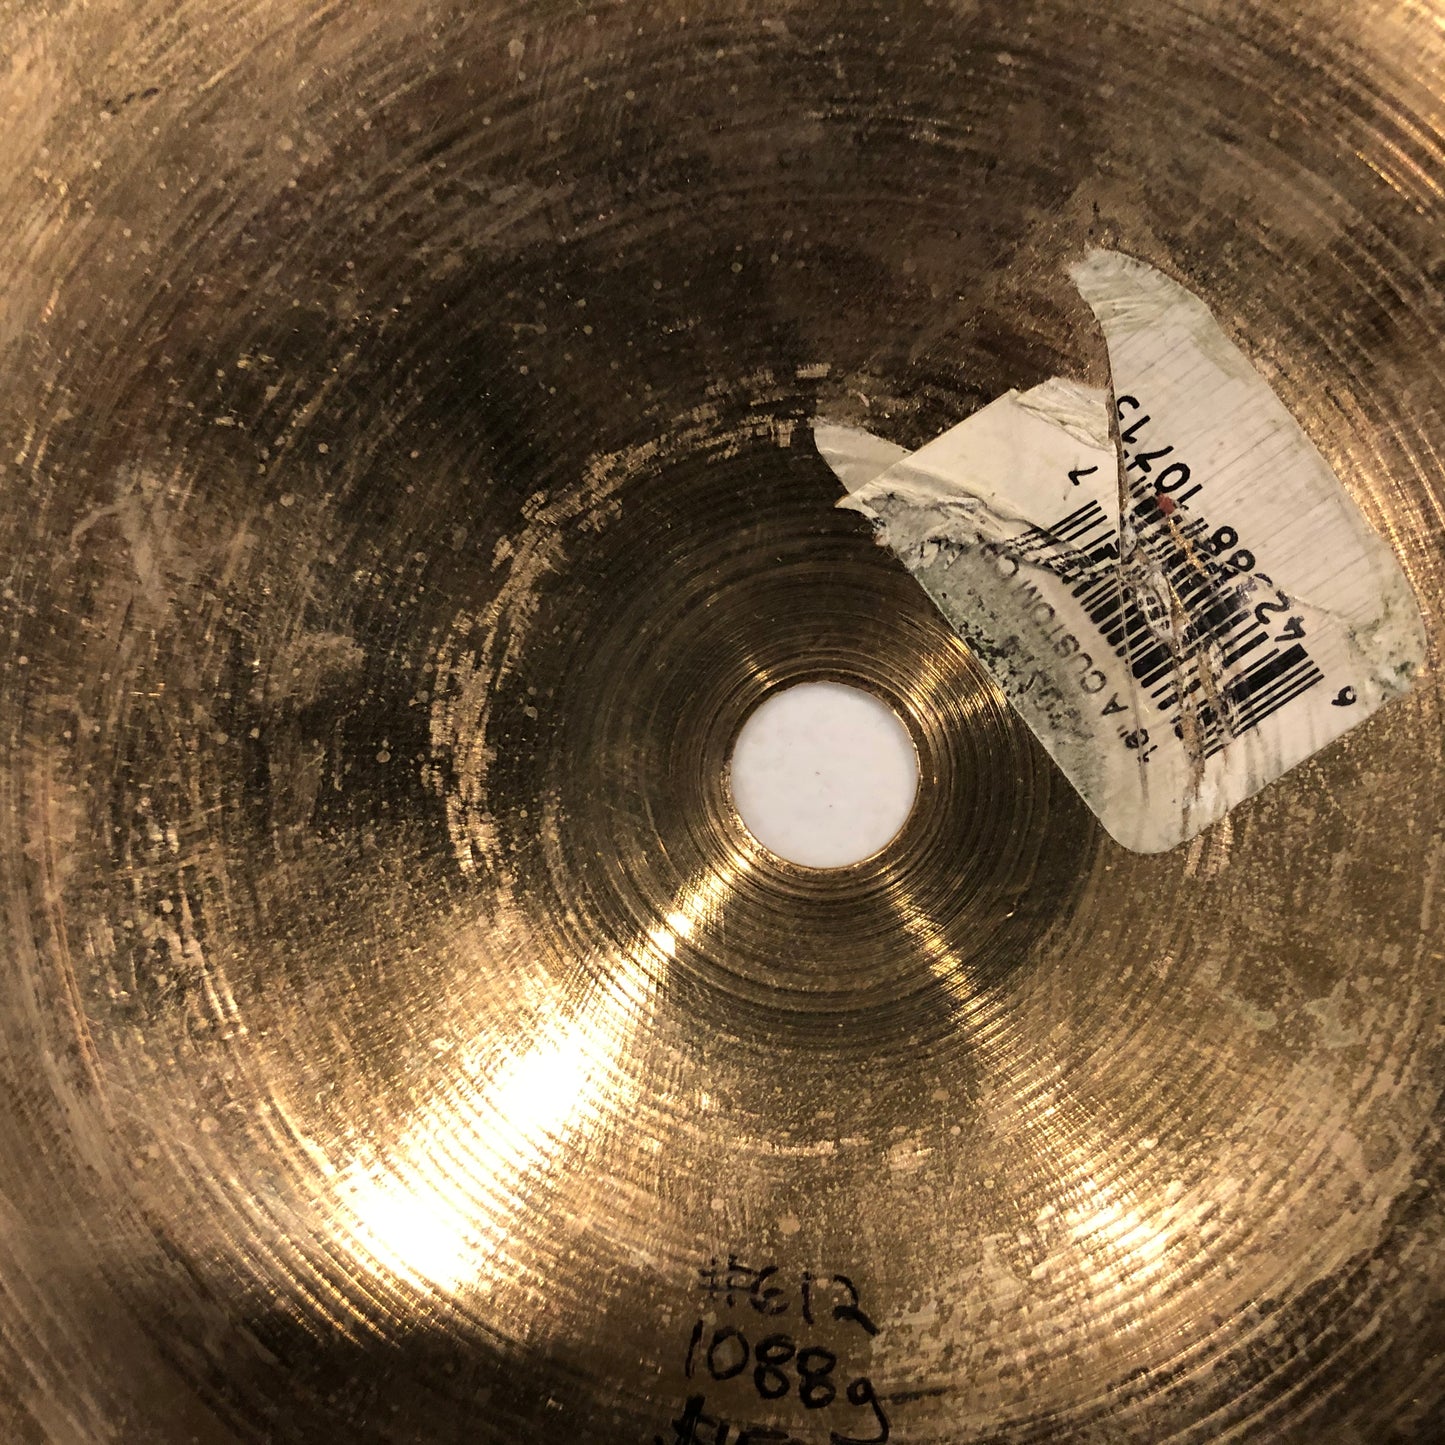 16" Zildjian A Custom Crash Cymbal 1088g #612